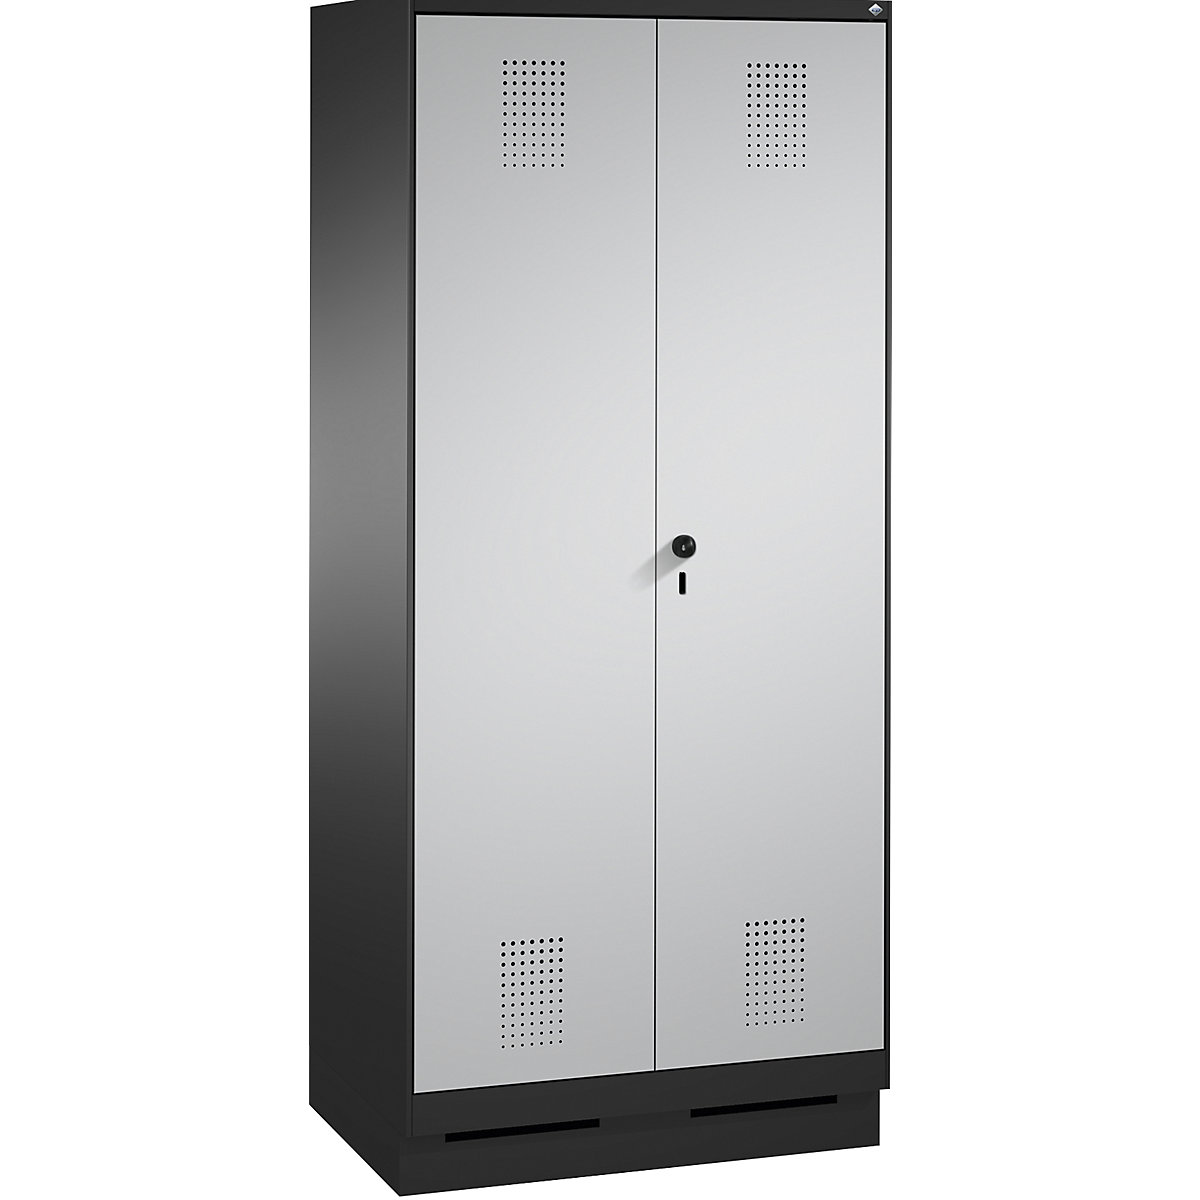 Garderobna omara EVOLO, dvokrilna vrata – C+P, 2 razdelka, širina razdelka 400 mm, s podnožjem, črno siva / bela aluminijasta-16